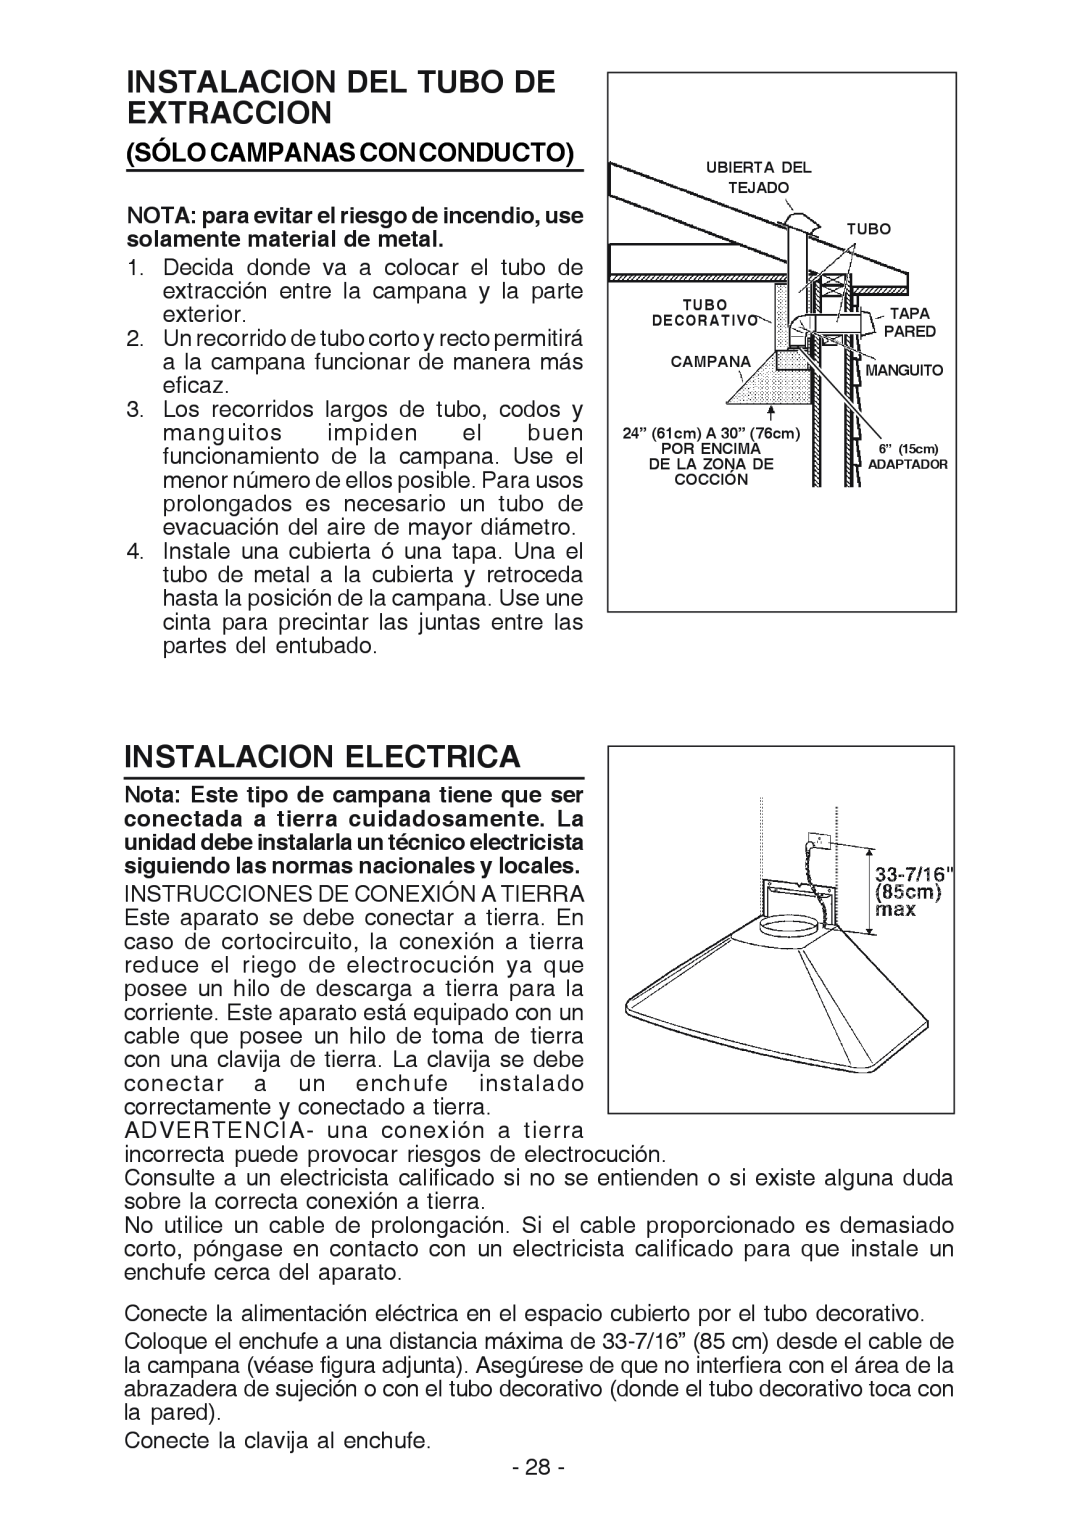 Best K3139 manual Instalacion Del Tubo De Extraccion, Instalacion Electrica, Sólo Campanas Con Conducto 